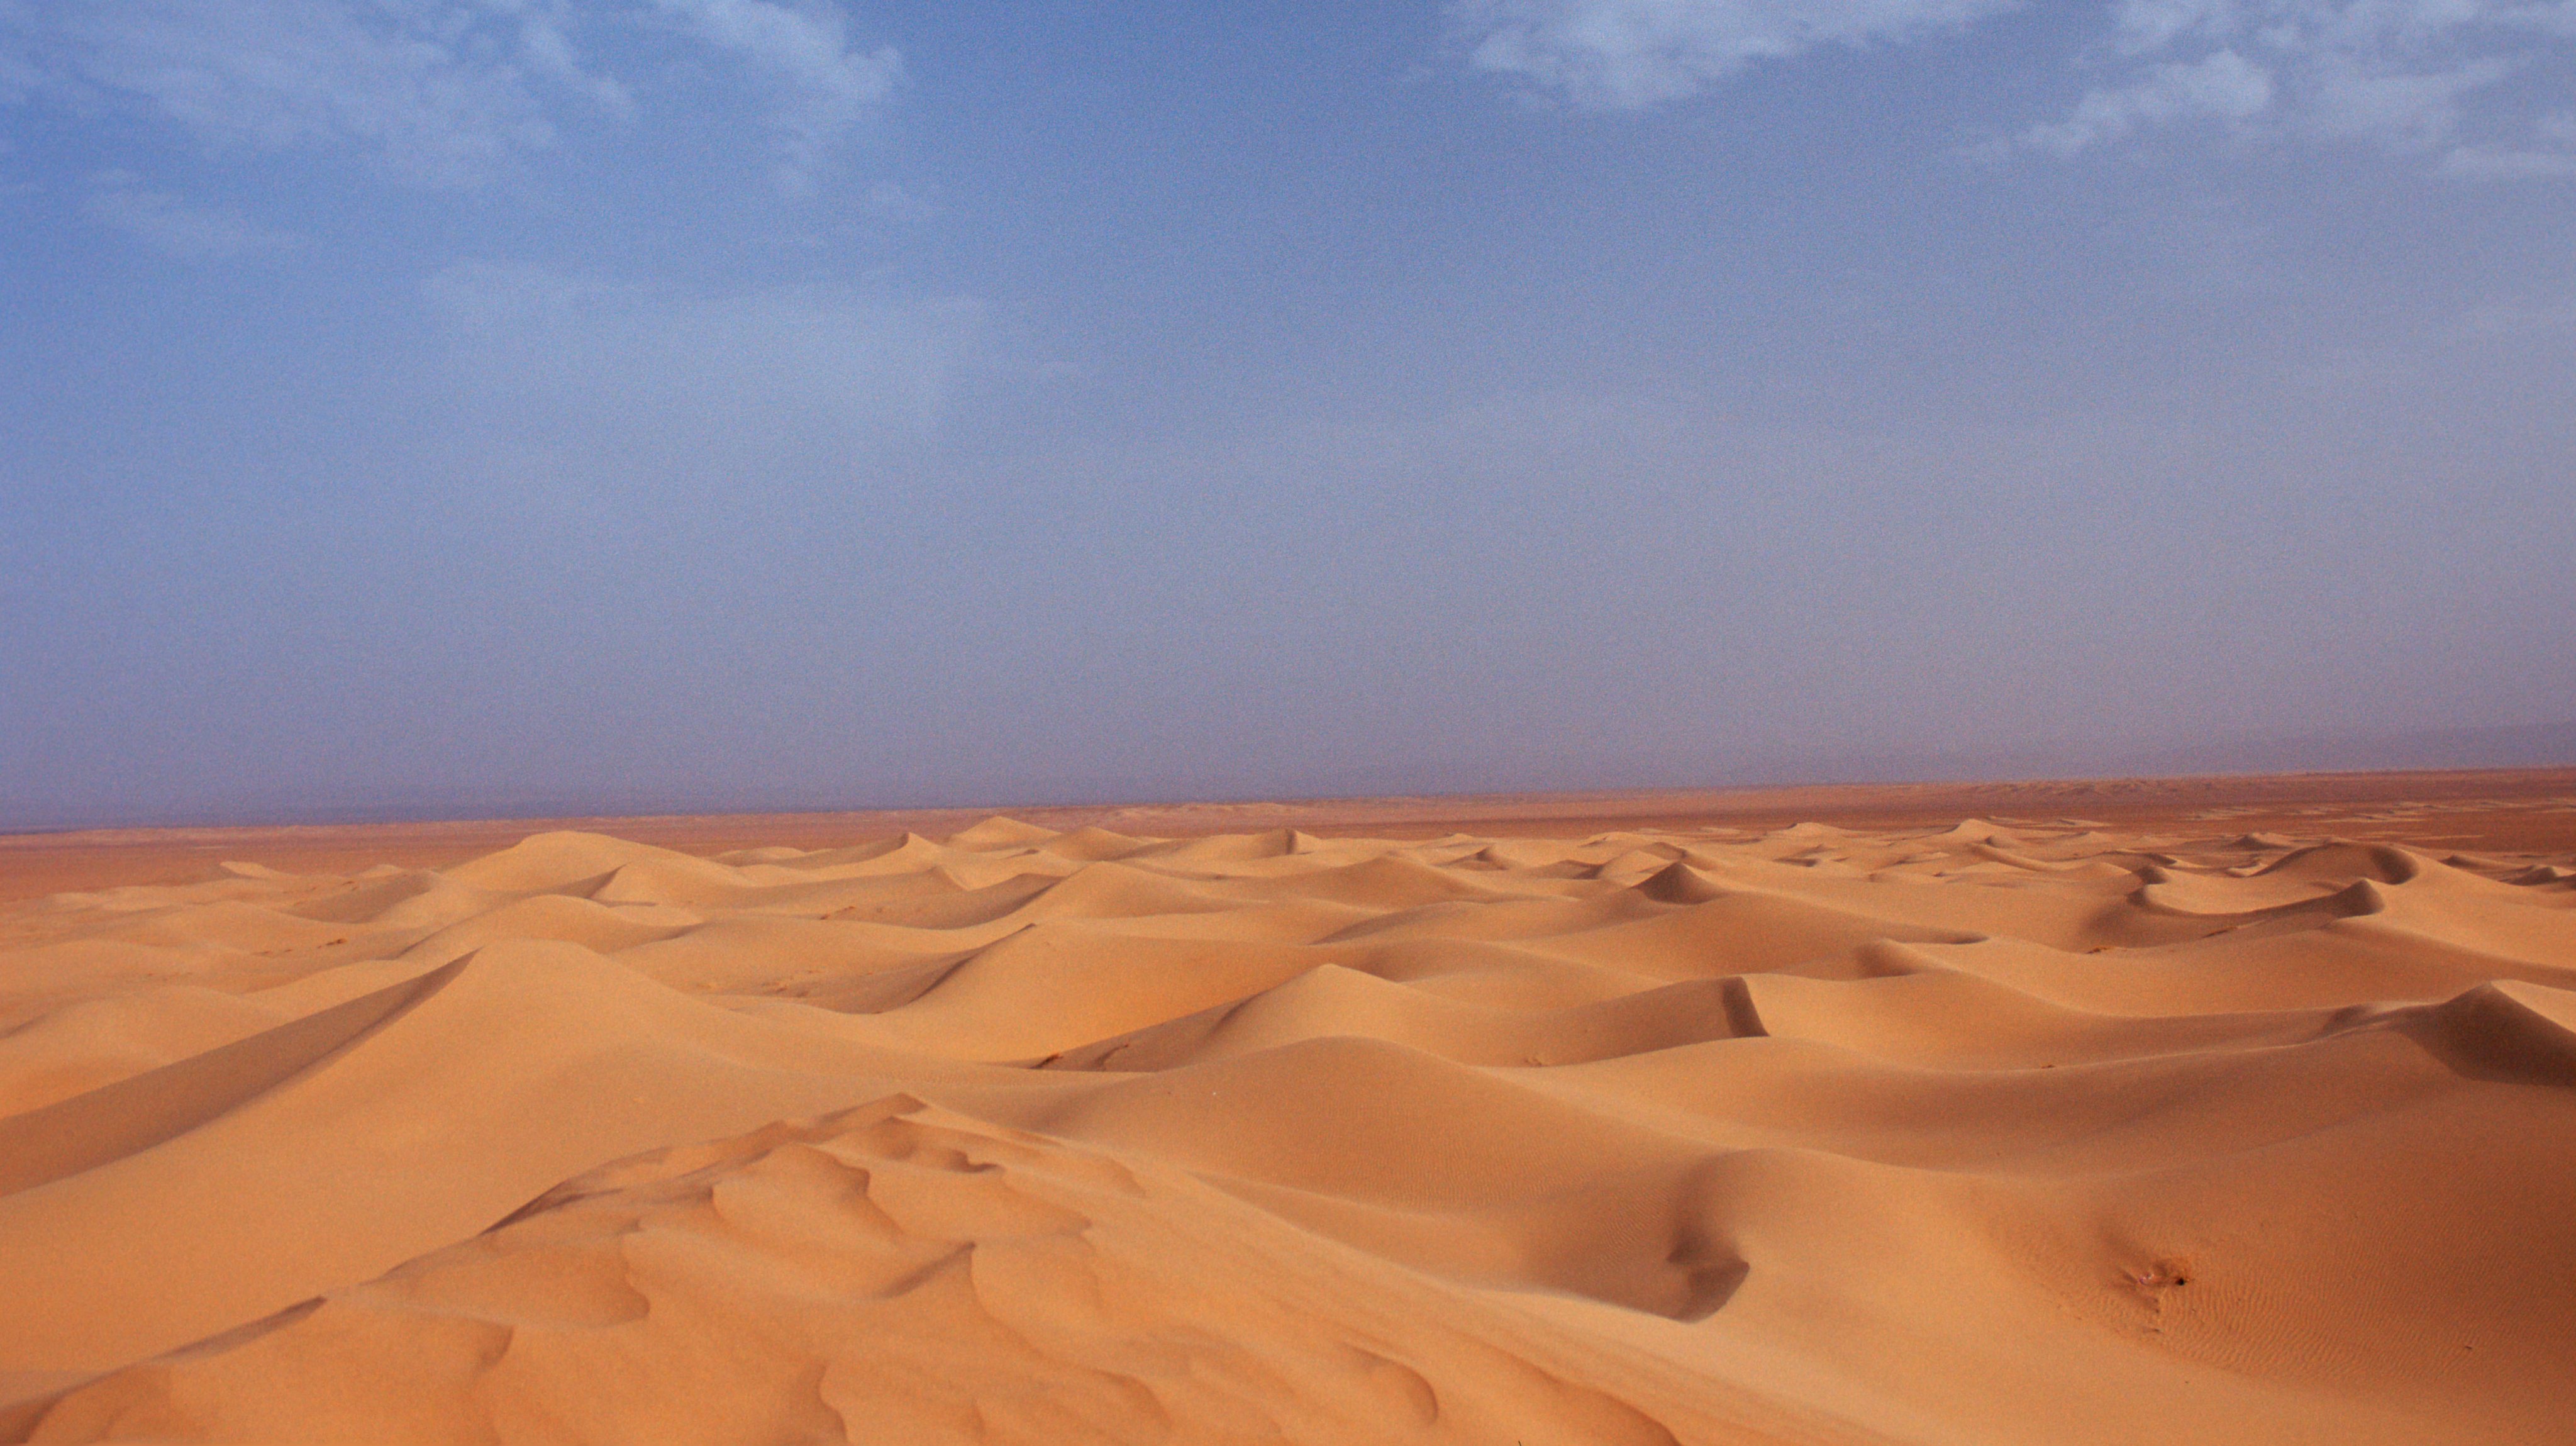 Quão profunda é a camada de areia no Deserto do Saara? O que existe abaixo  desta camada? É uma transição gradual, ou trata-se de areia pura em cima de  uma superfície plana? 